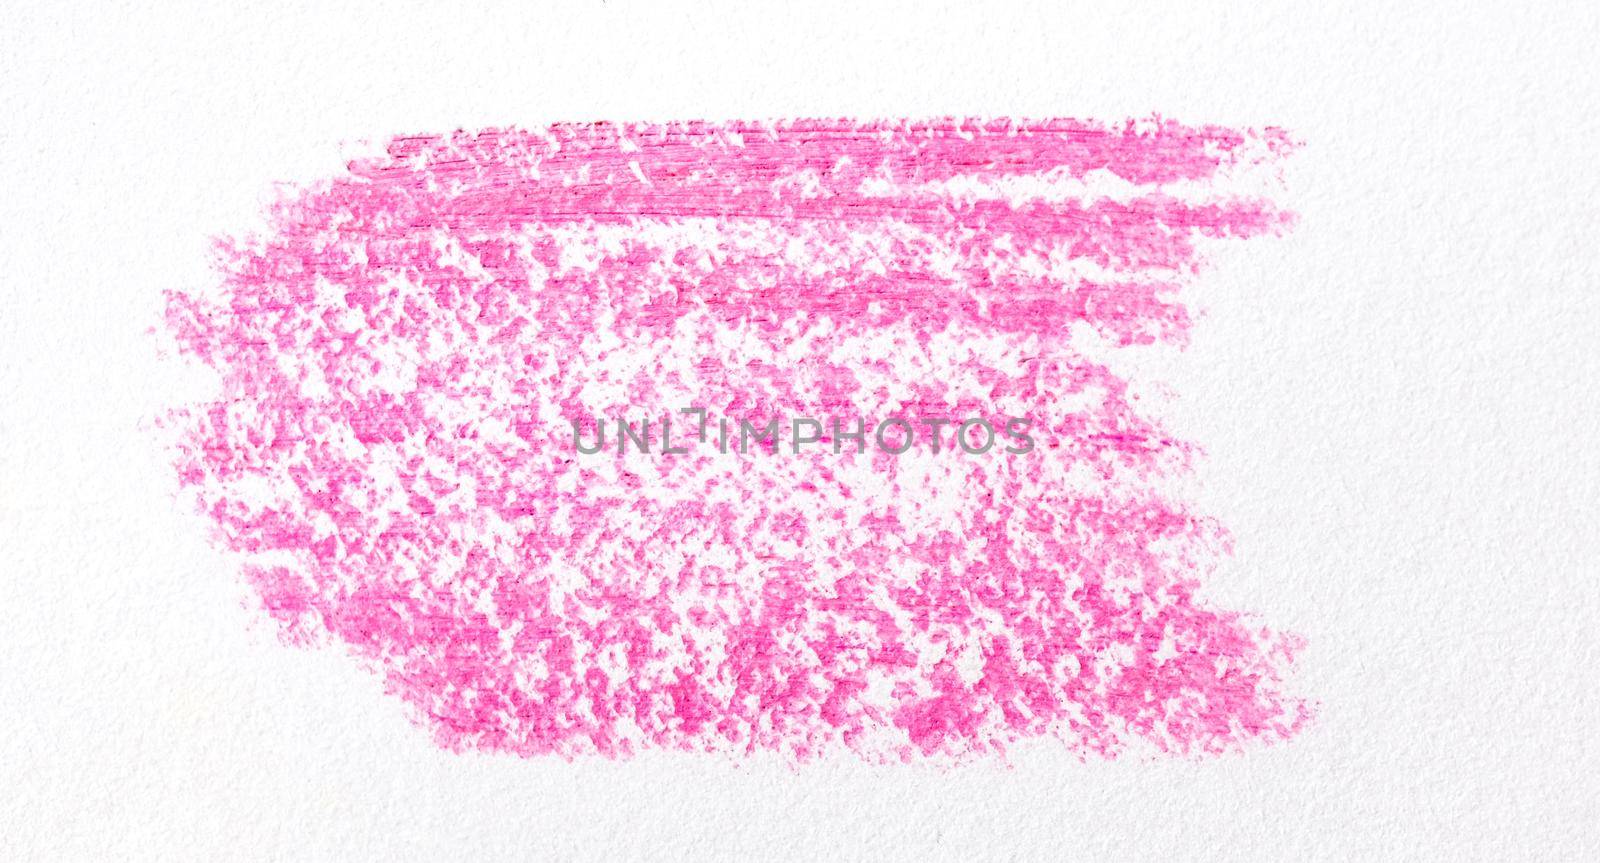 Pink cosmetic pencil smear by GekaSkr